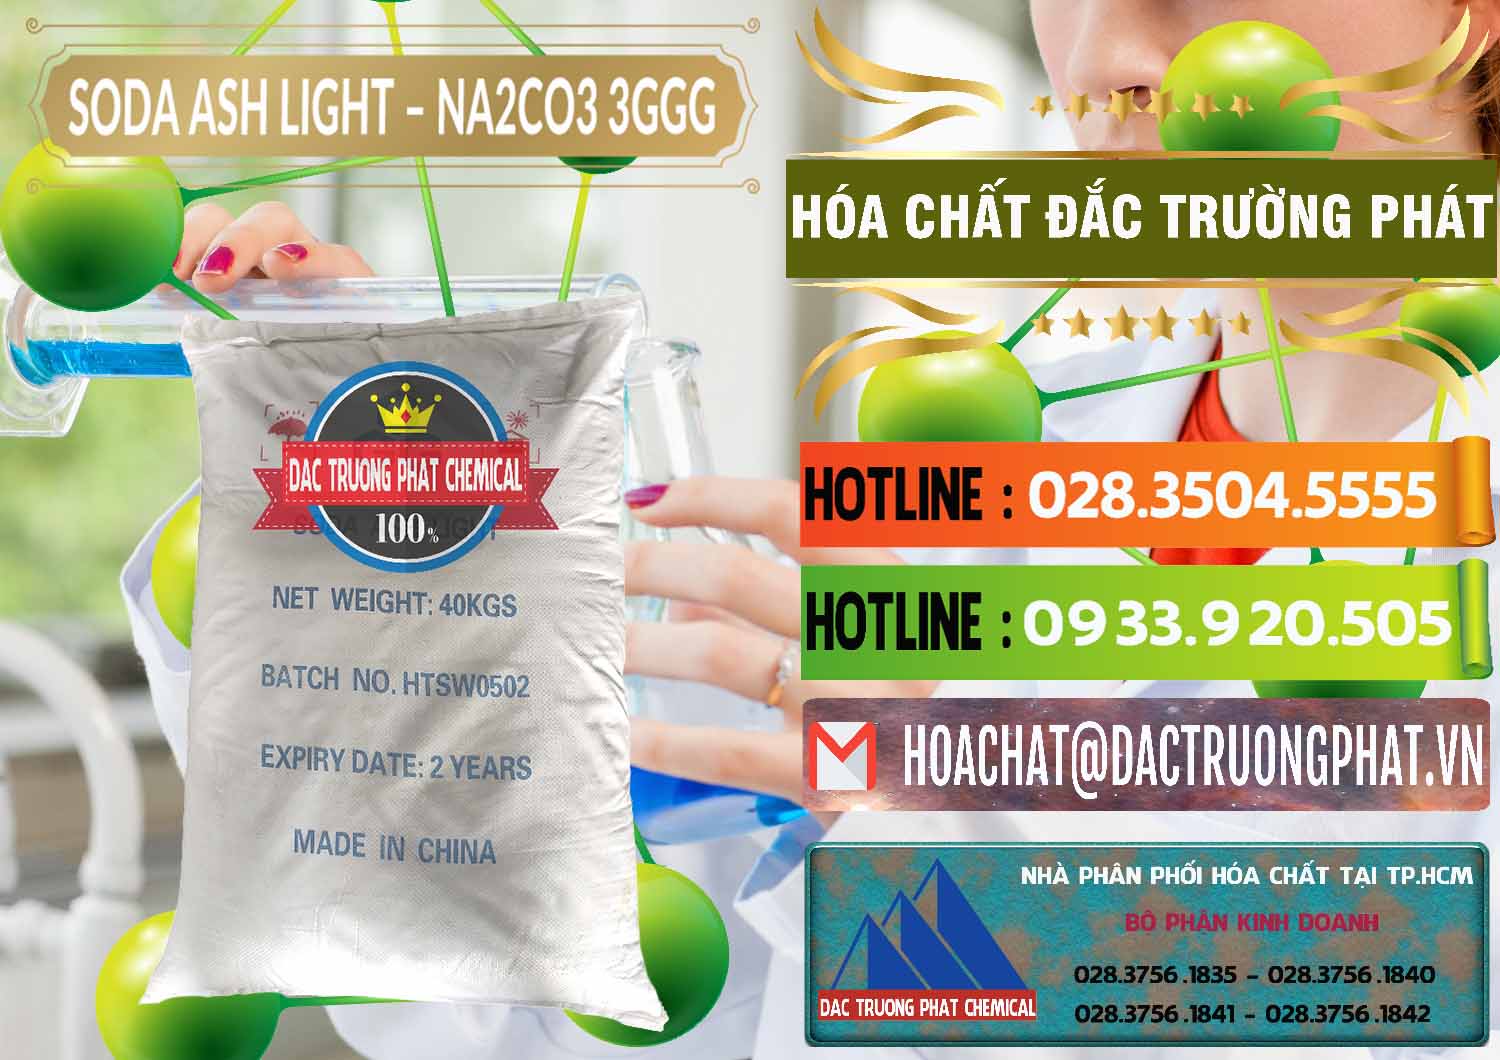 Cty cung cấp và bán Soda Ash Light - NA2CO3 3GGG Trung Quốc China - 0124 - Công ty cung cấp và kinh doanh hóa chất tại TP.HCM - cungcaphoachat.com.vn